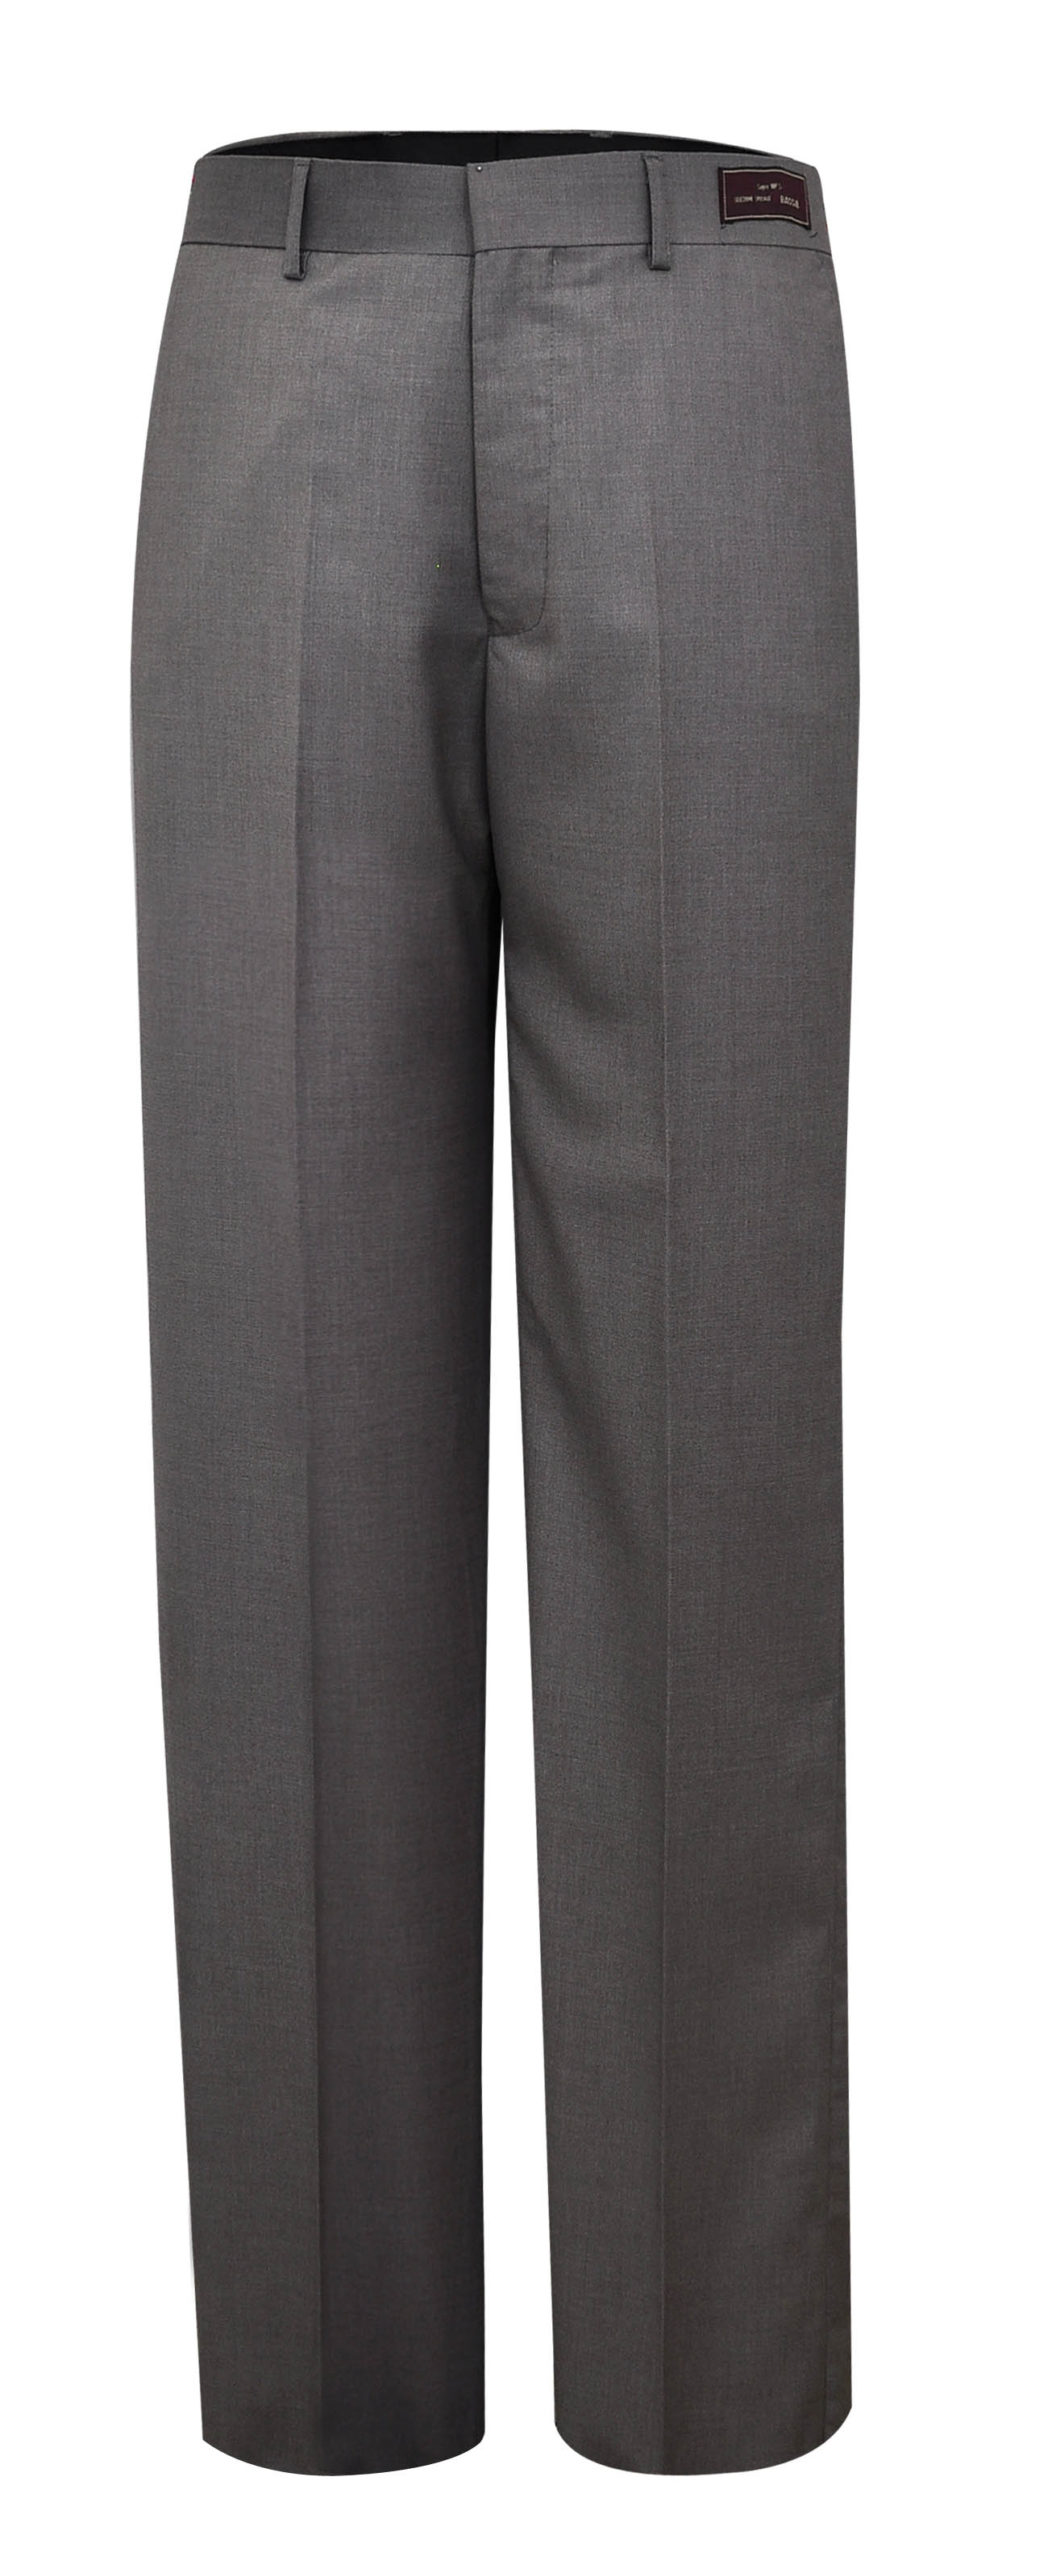 Pantalón Formal gris